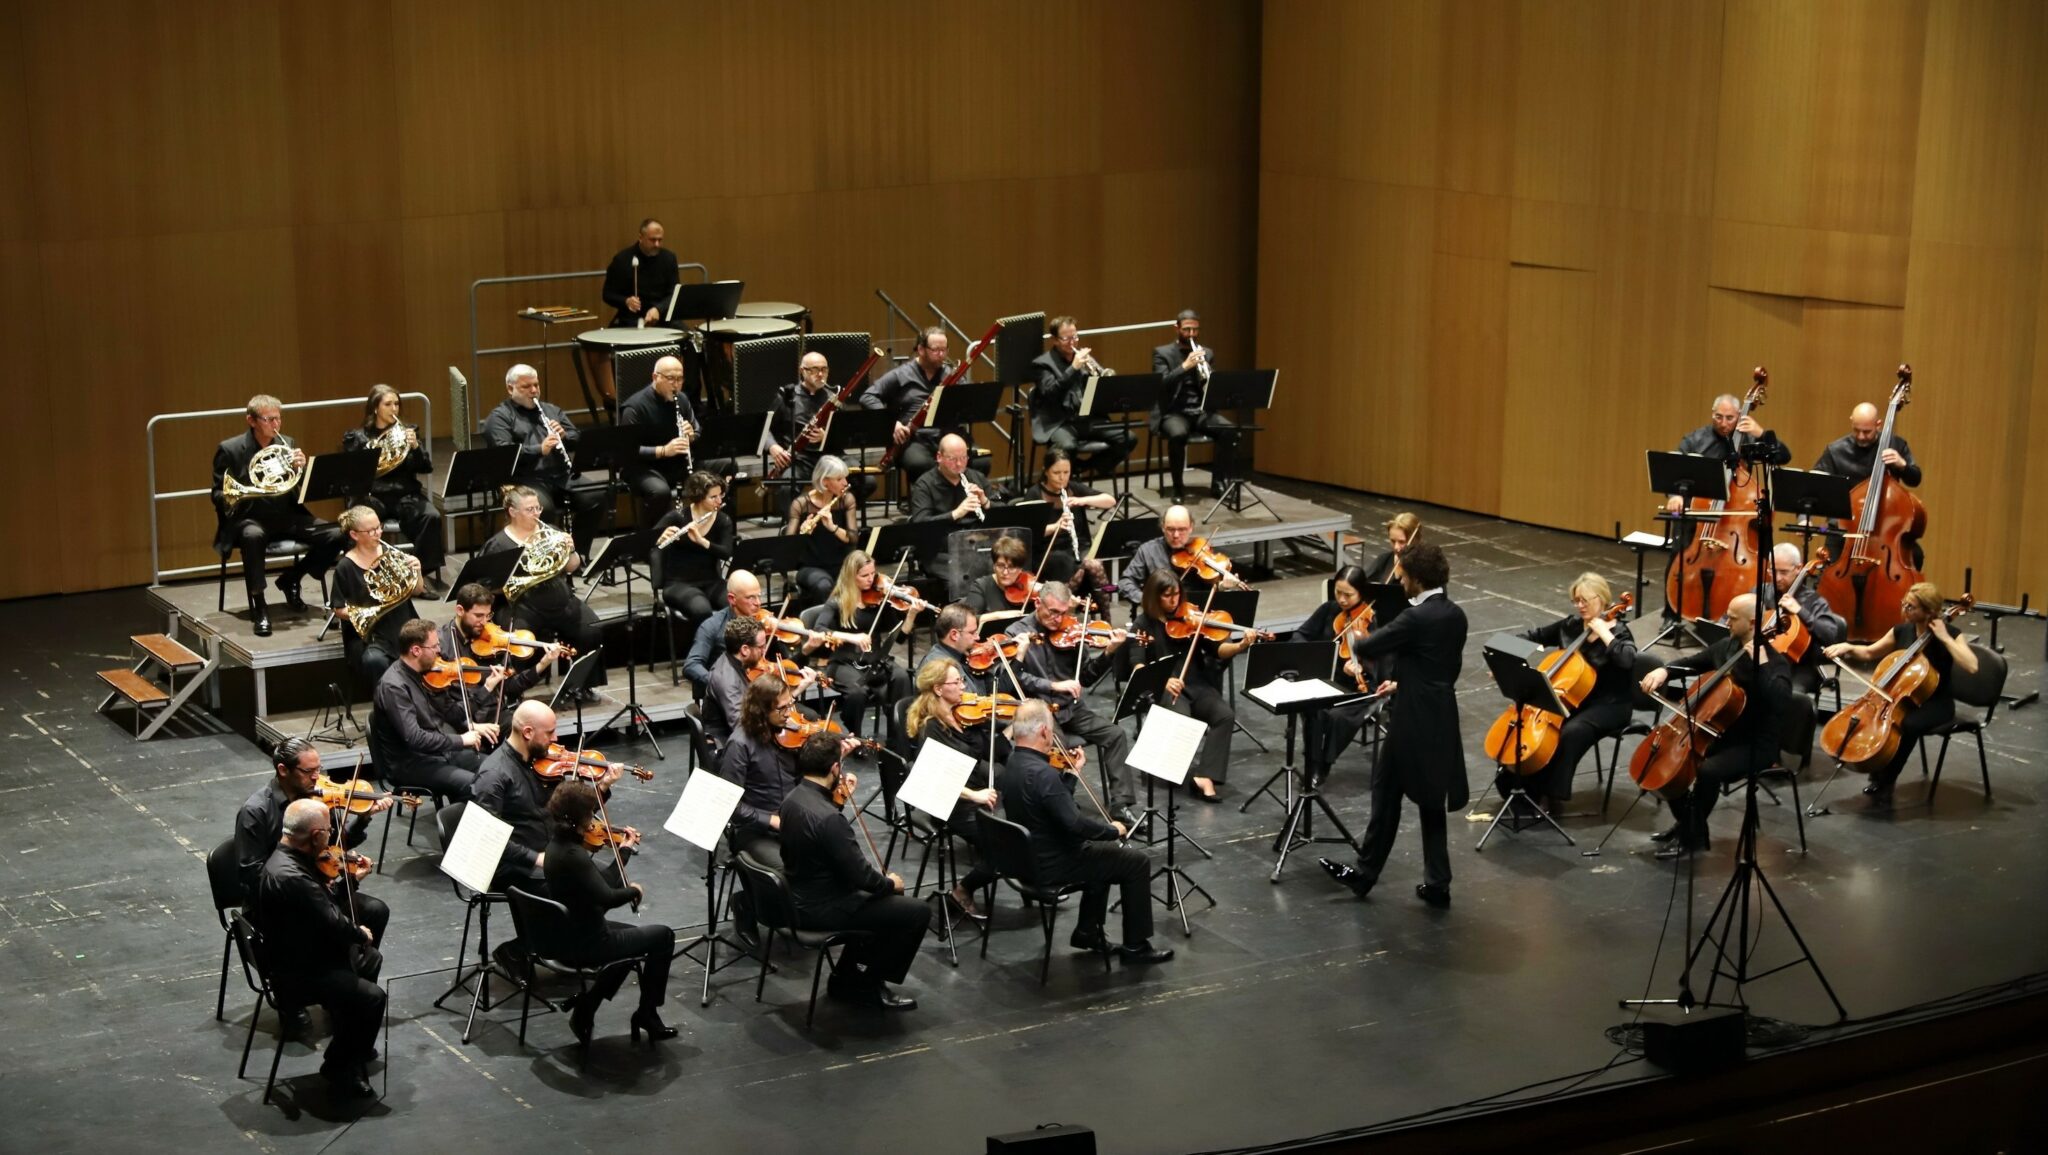 Δέκα ταλαντούχοι μαέστροι διευθύνουν την τελική συναυλία του διαγωνισμού διεύθυνσης της ΣΟΚ